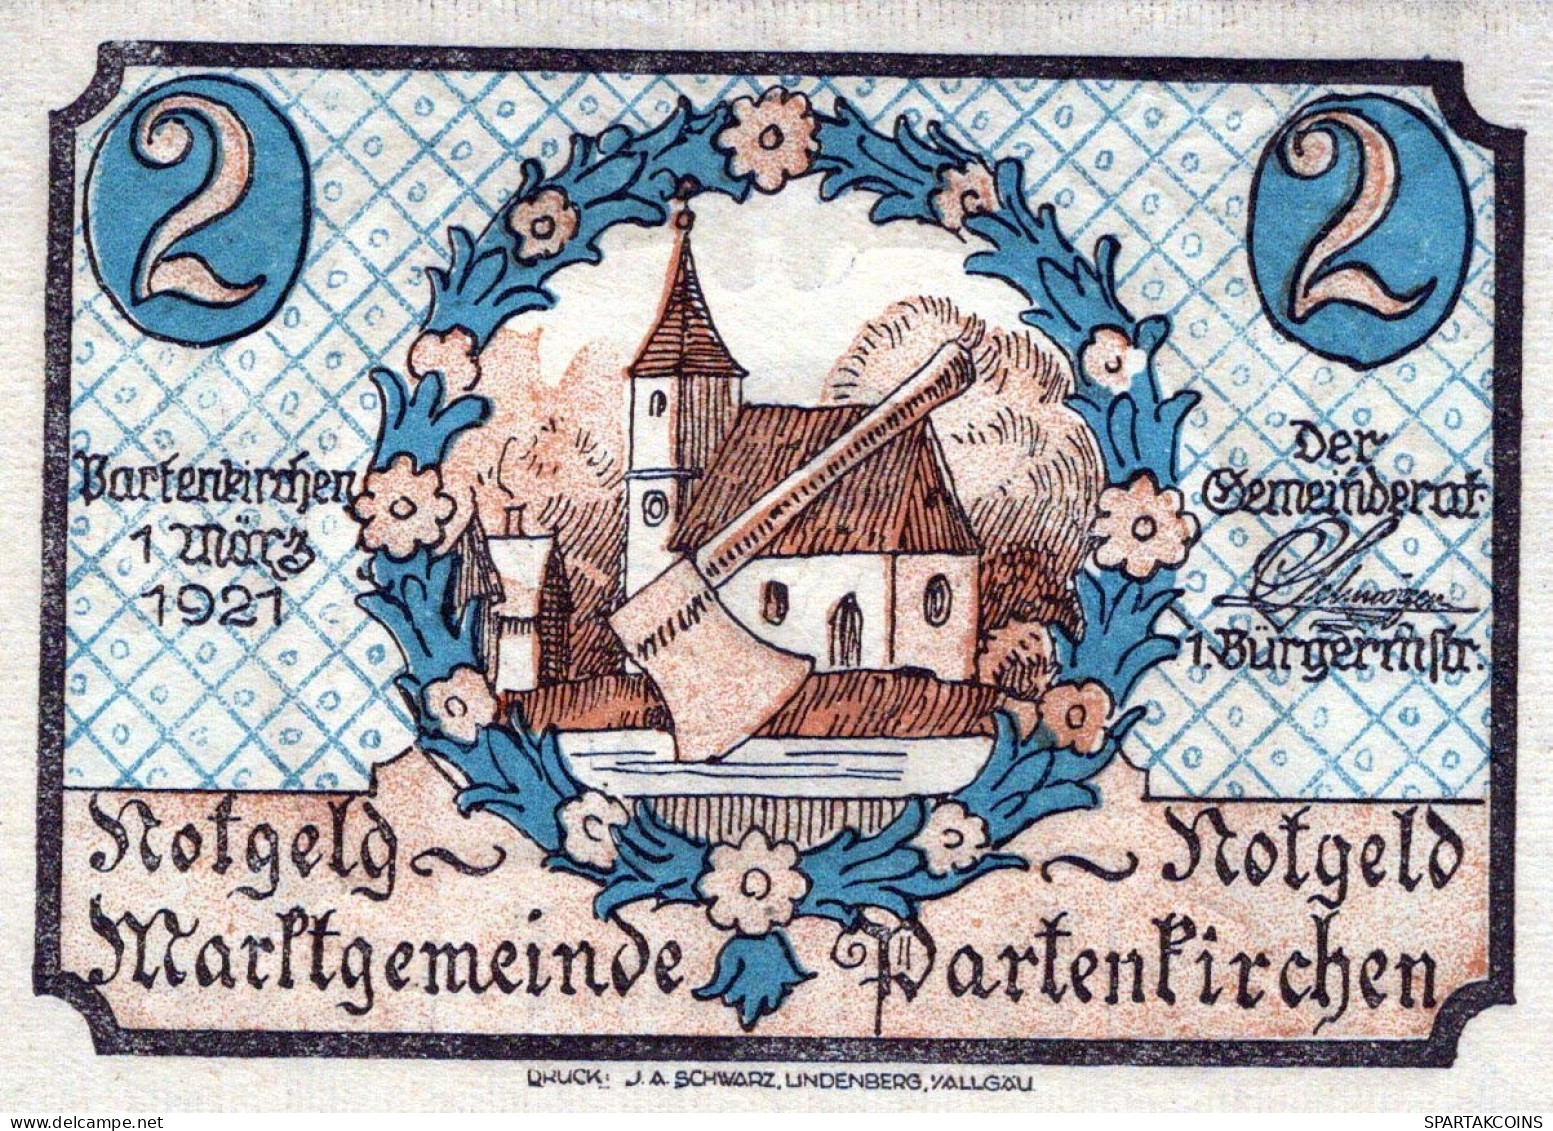 2 MARK 1921 Stadt PARTENKIRCHEN Bavaria UNC DEUTSCHLAND Notgeld Banknote #PB479 - [11] Local Banknote Issues